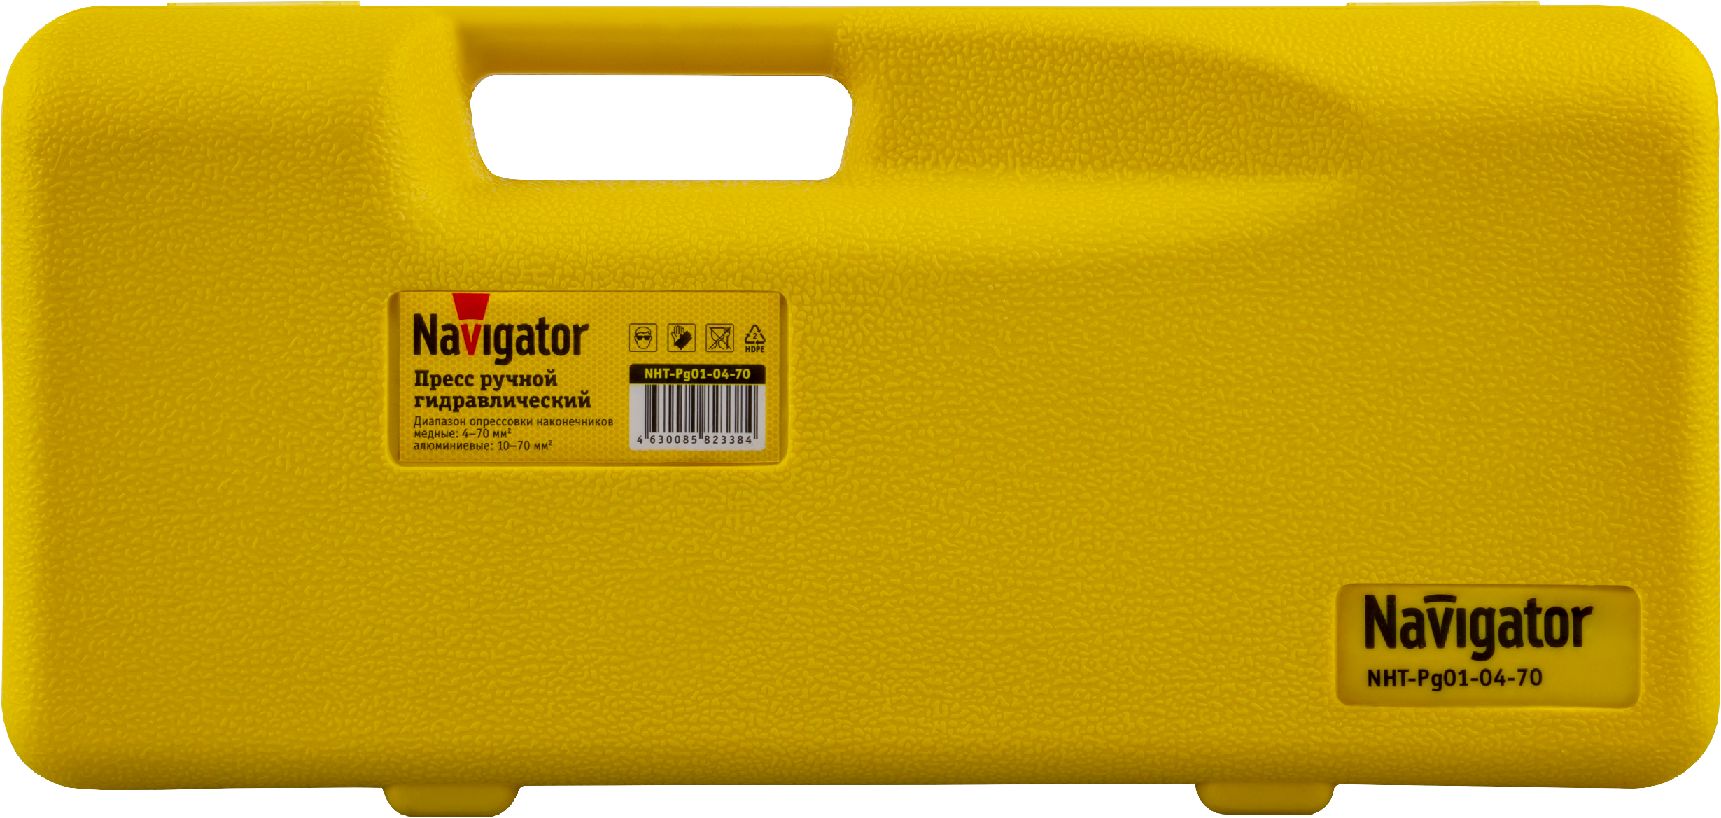 Пресс гидравлический Navigator 82 338 NHT-Pg01-04-70 (ручной, 4-70 мм2)